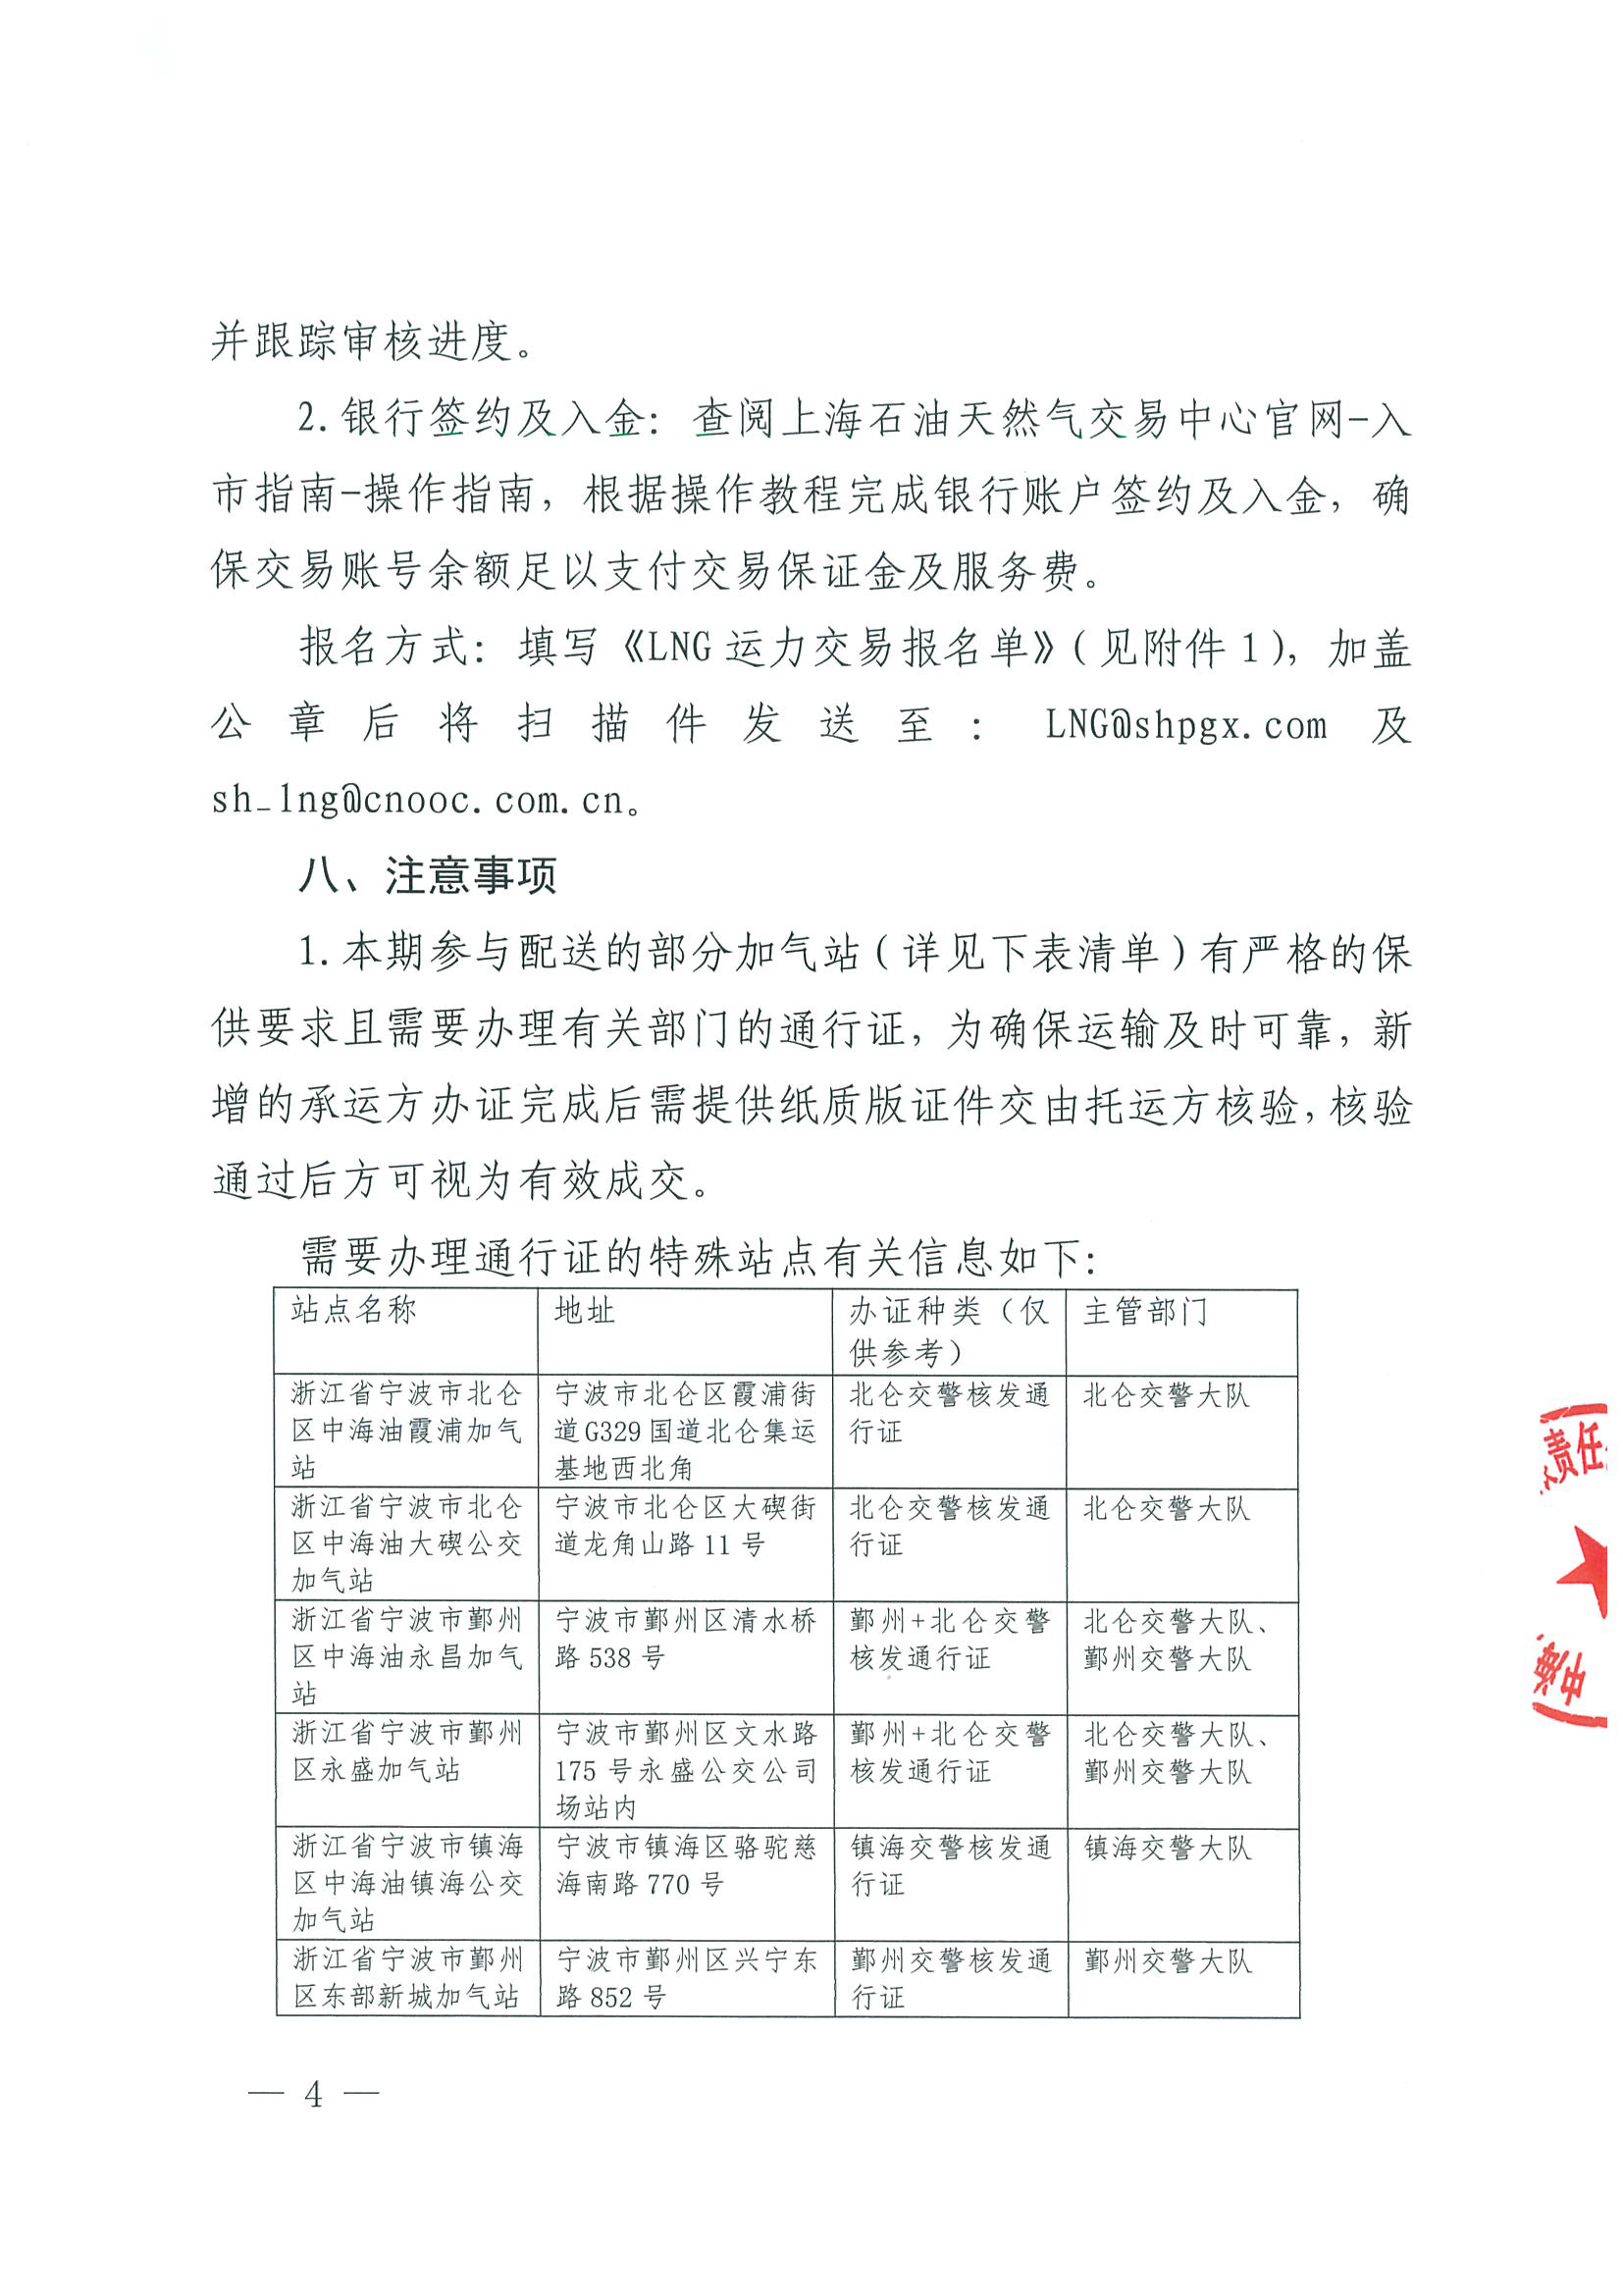 附件一：关于开展LNG运力竞价交易的公告0927_页面_4.png